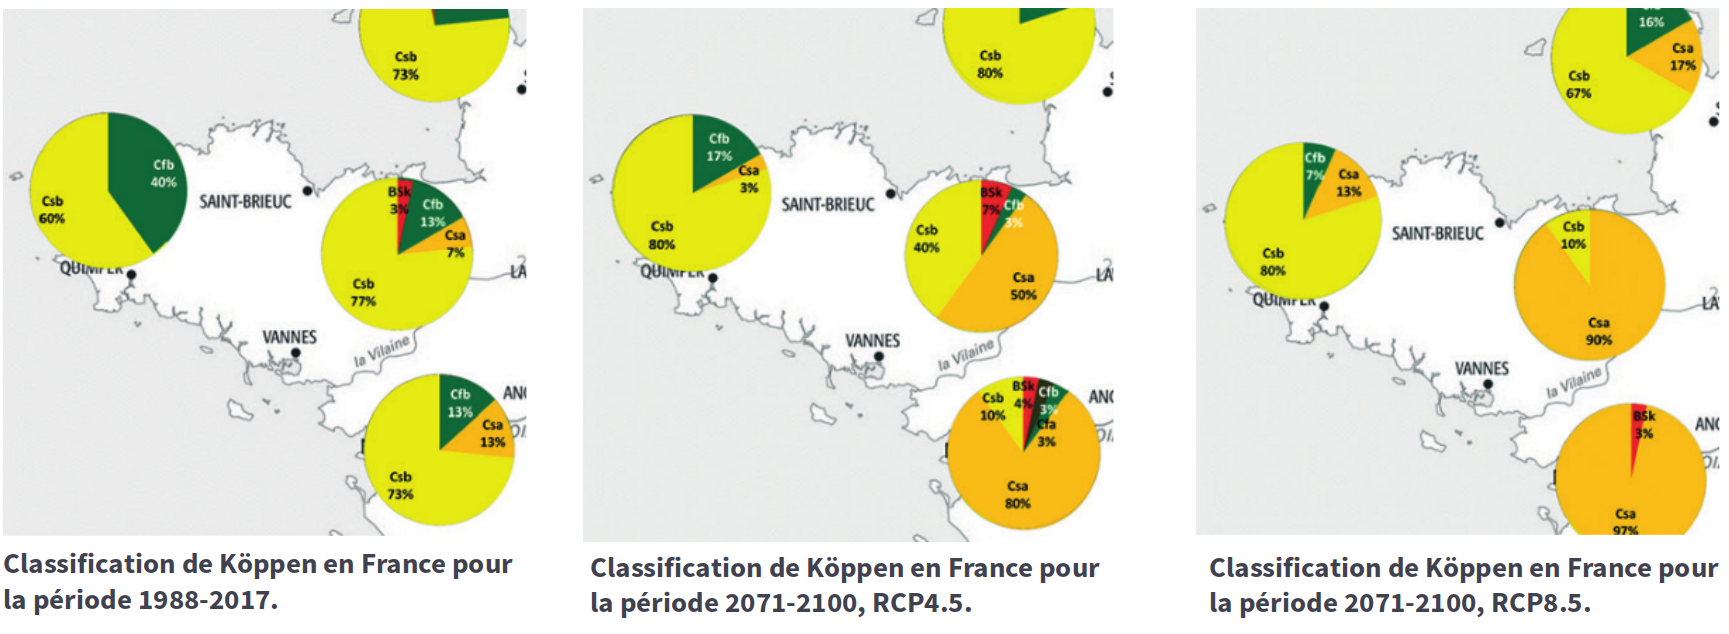 Projections climatiques en Bretagne - classification de Köppen (source : V. Dubreuil)